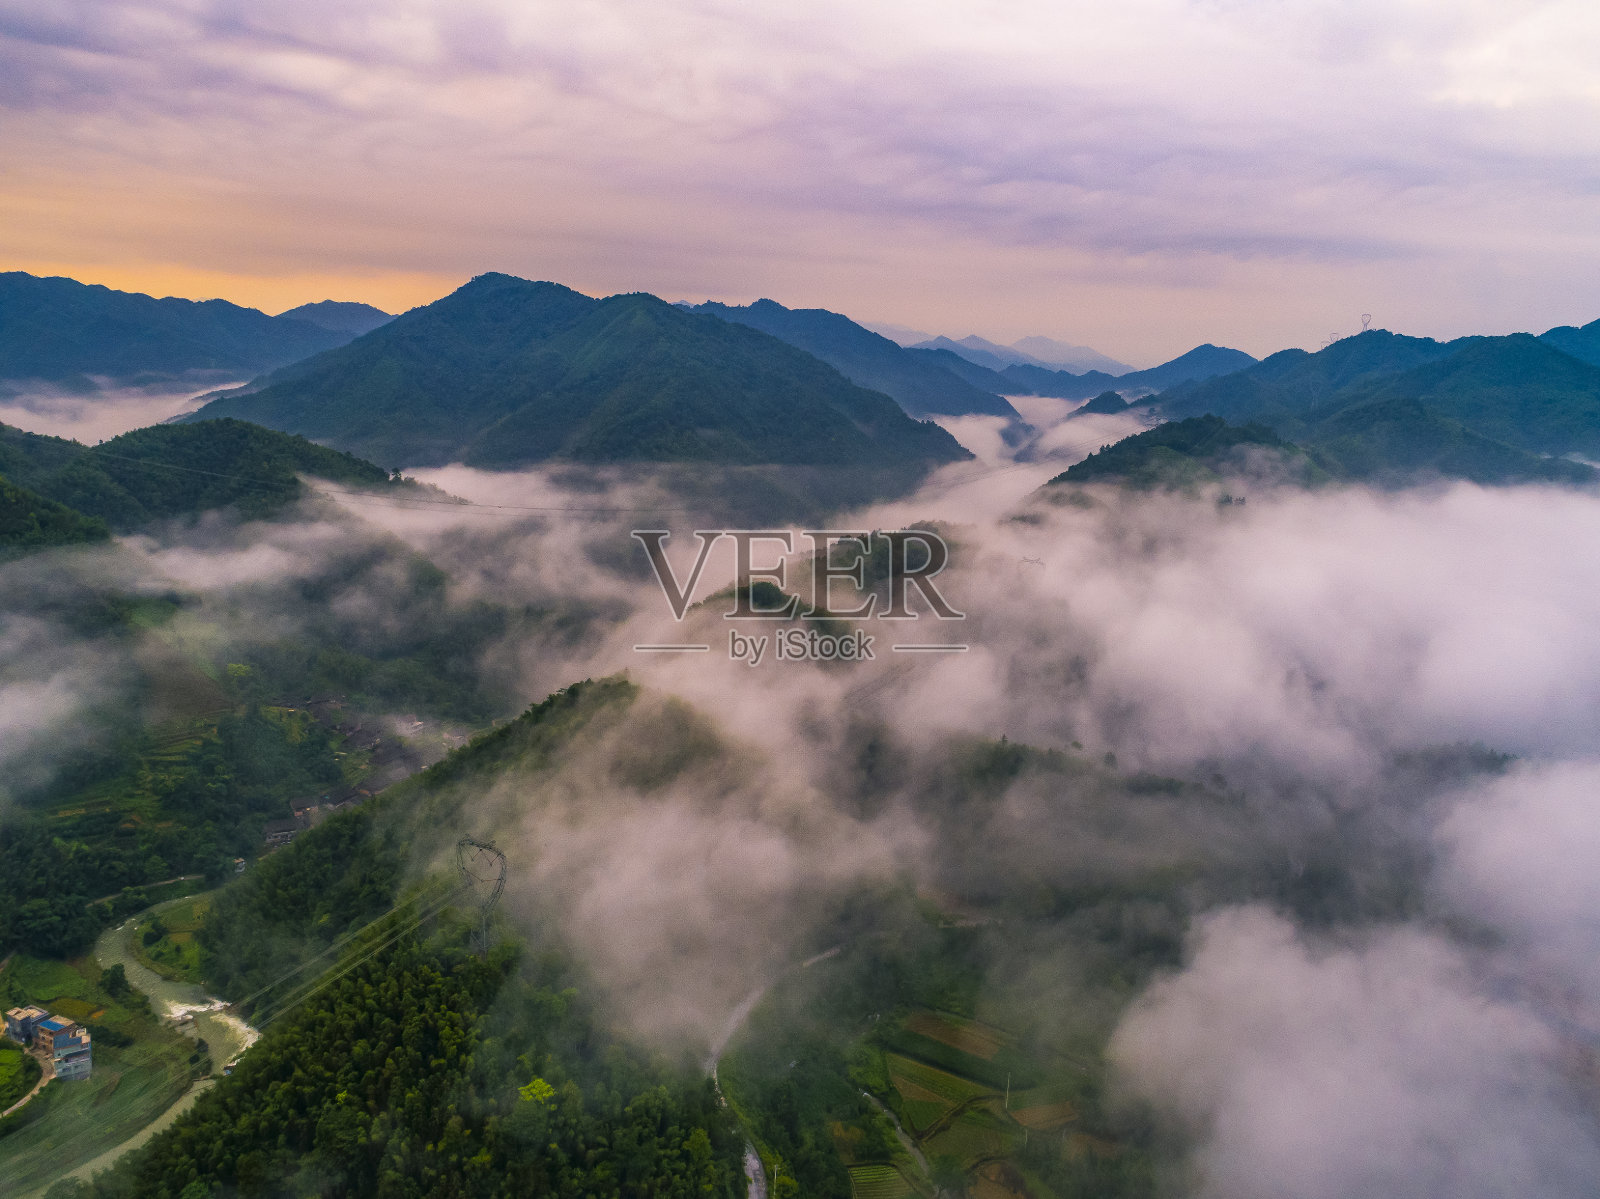 中国桂林龙胜的龙脊梯田照片摄影图片